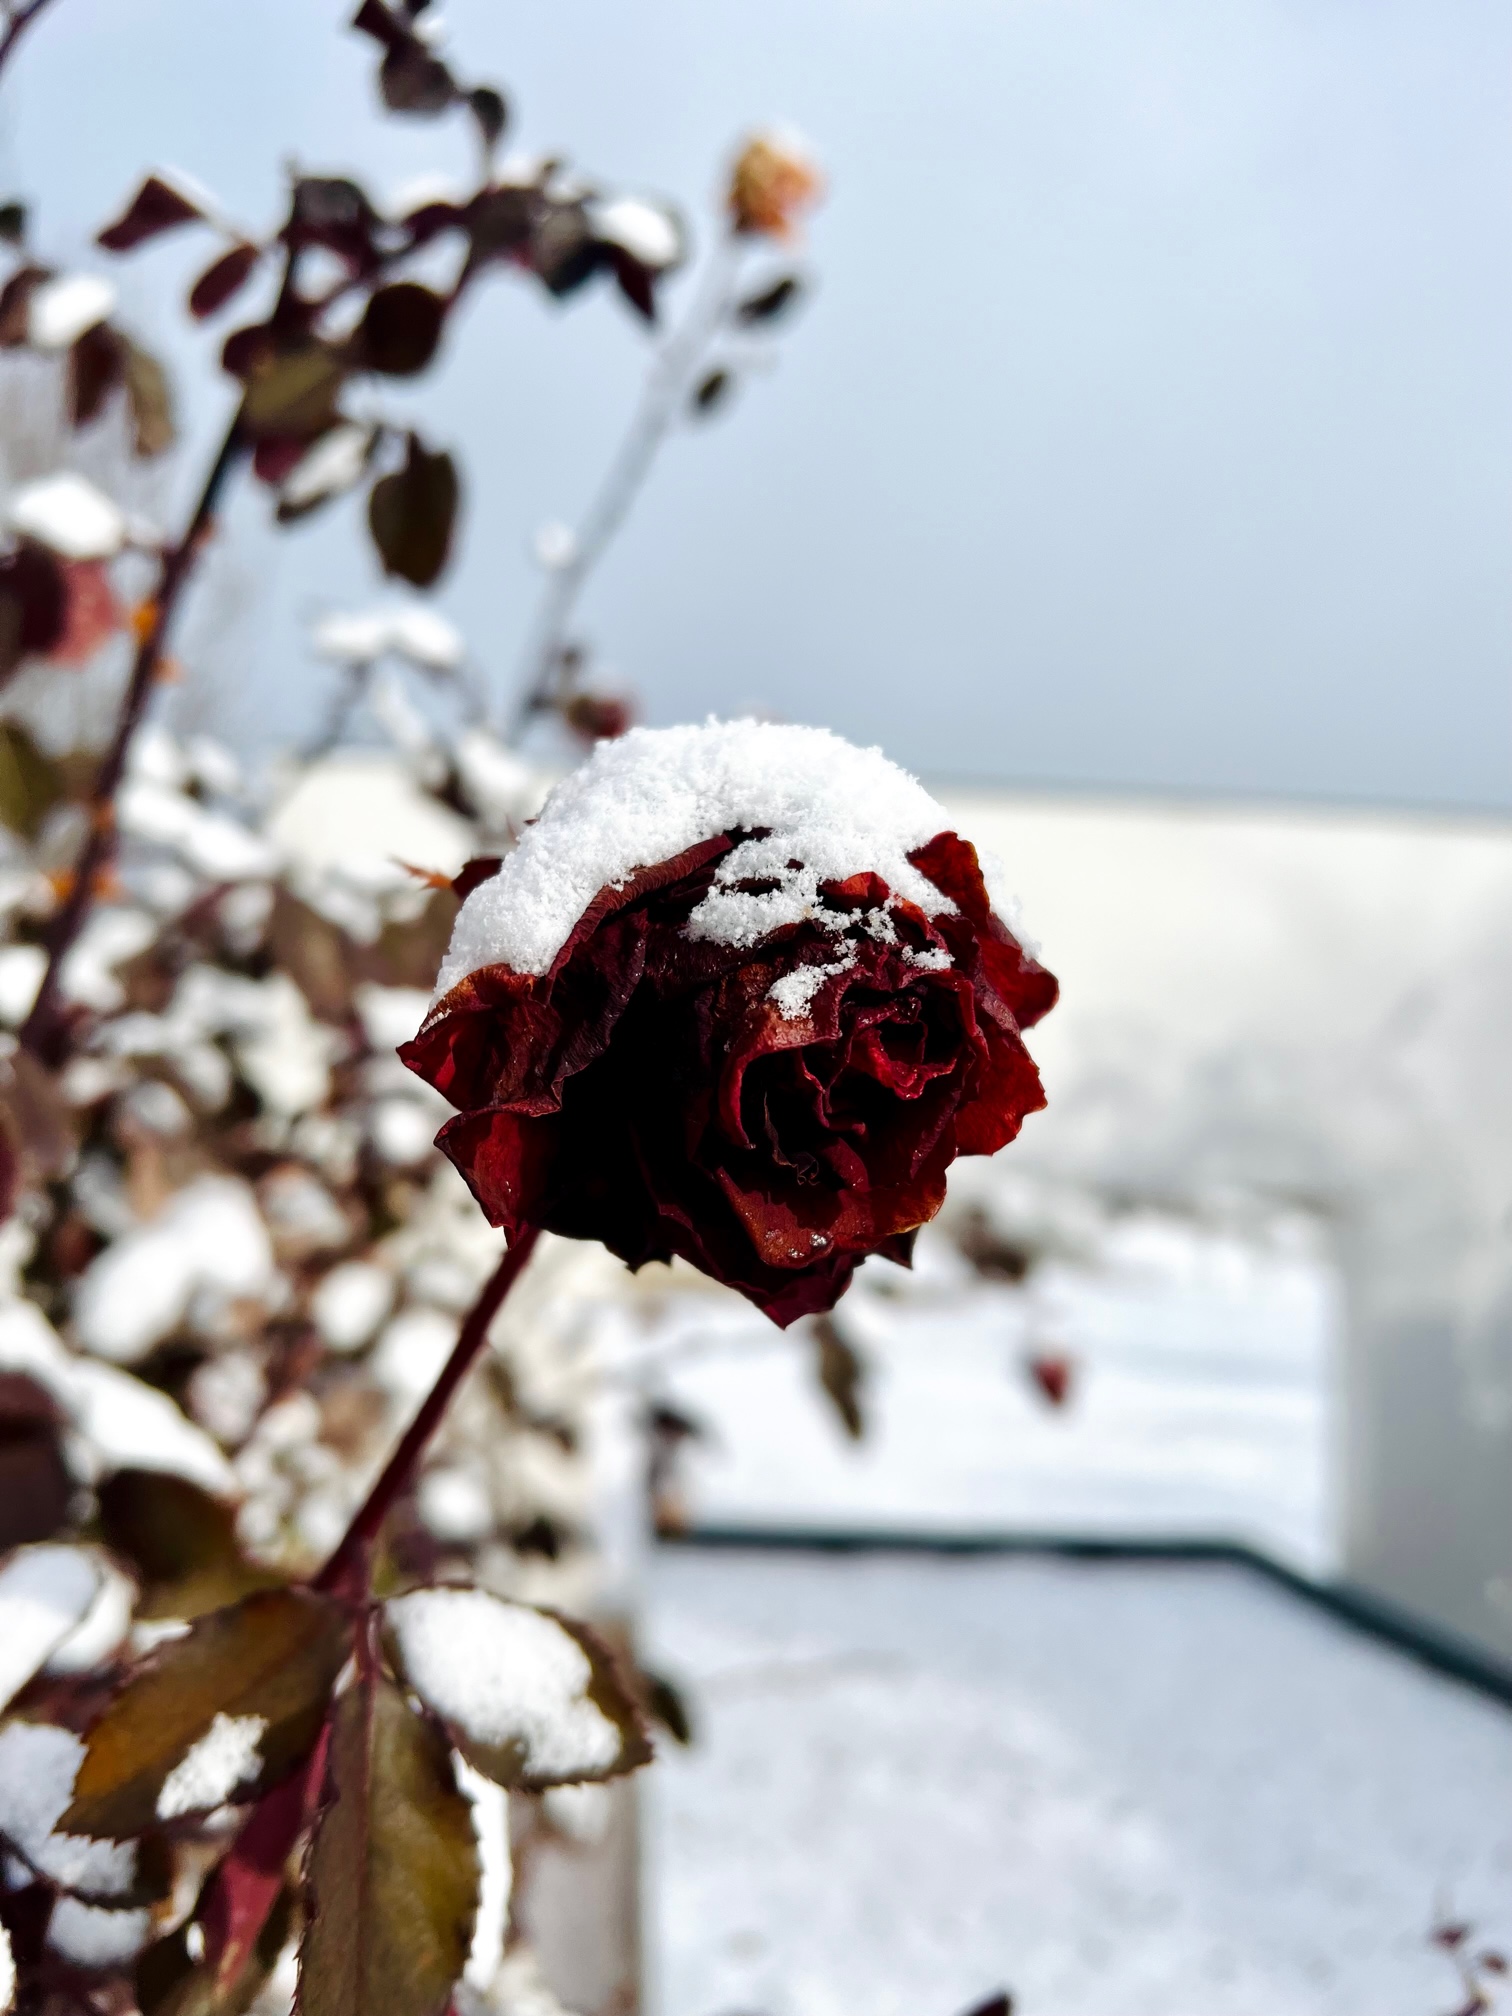 赤いバラ一輪にかかる雪の装い